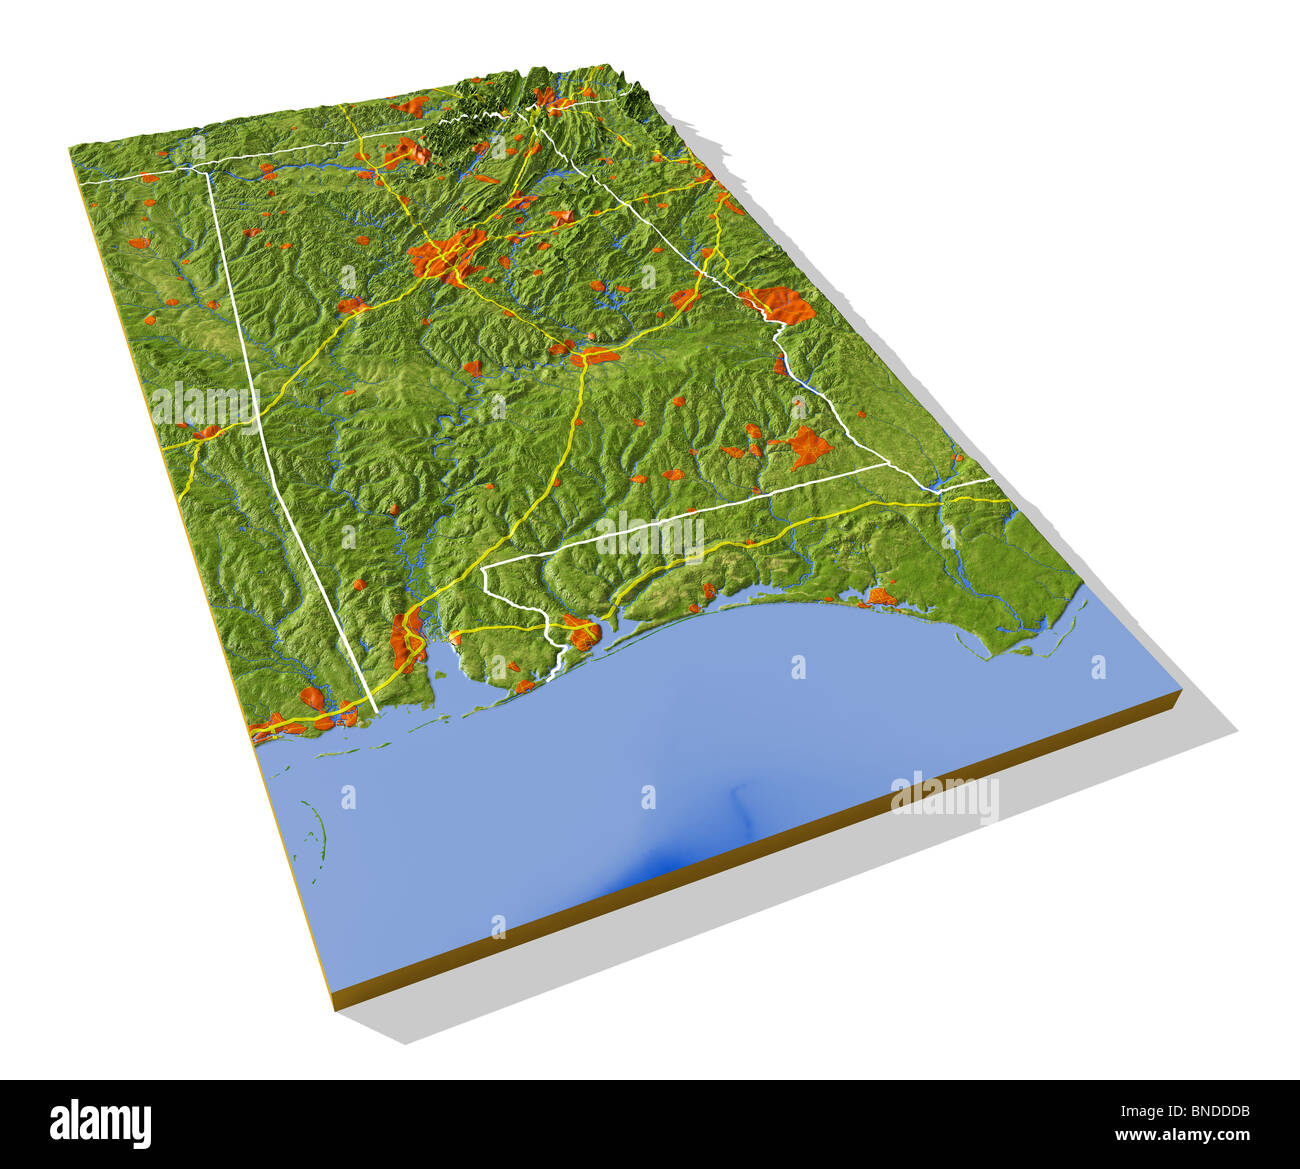 In Alabama, 3D rilievo mappa con le zone urbane, autostrade interstatali e frontiere. Foto Stock